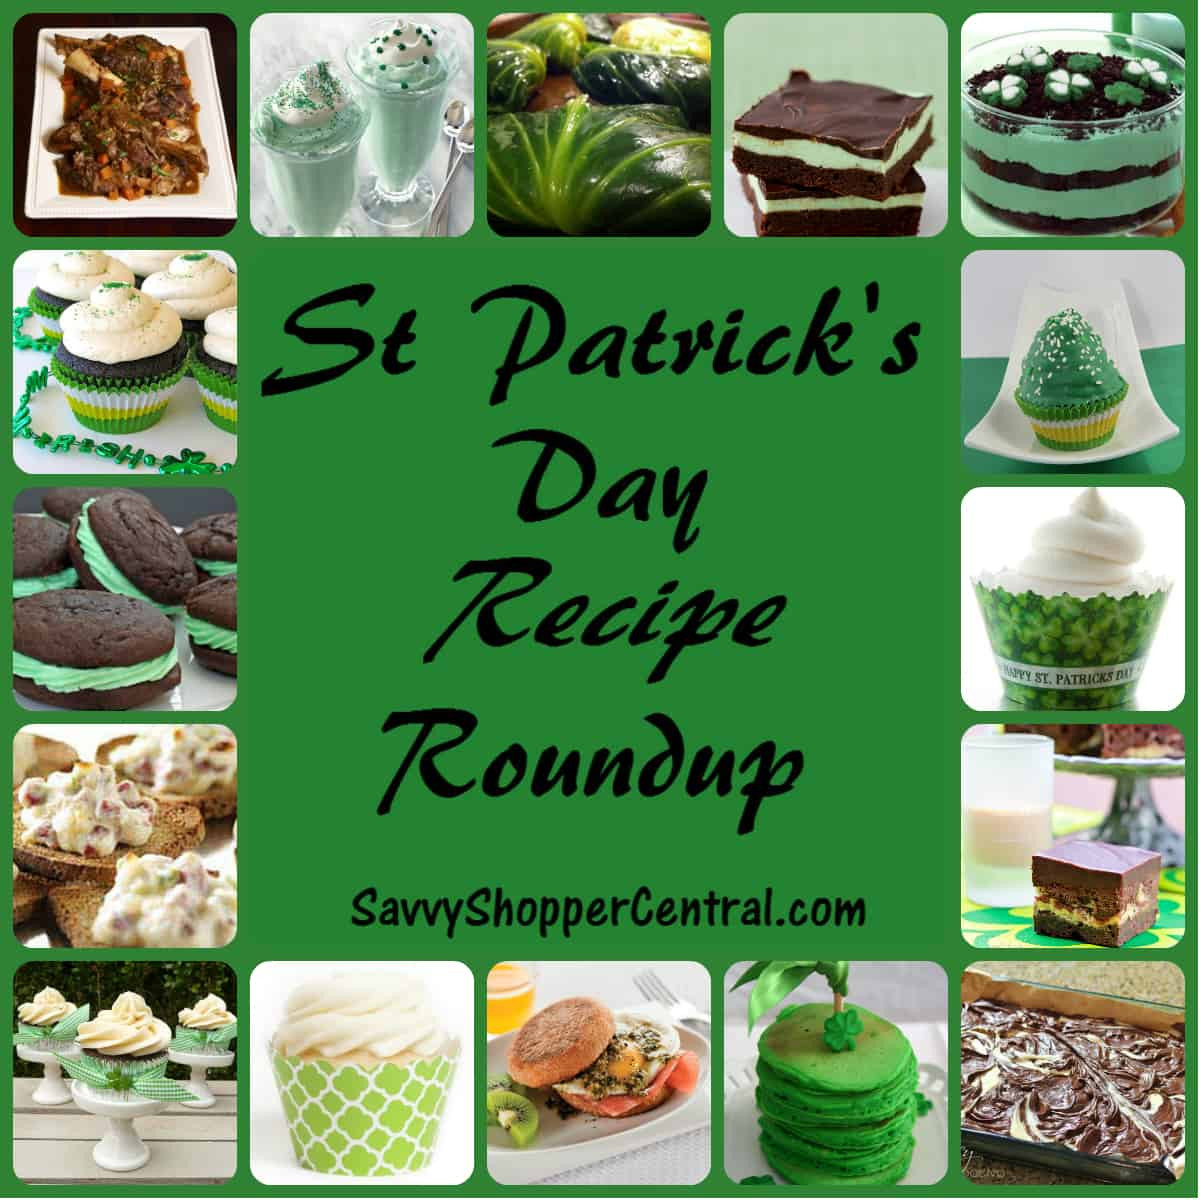 St Patrick's Day Food Recipes
 20 St Patricks Day Recipes